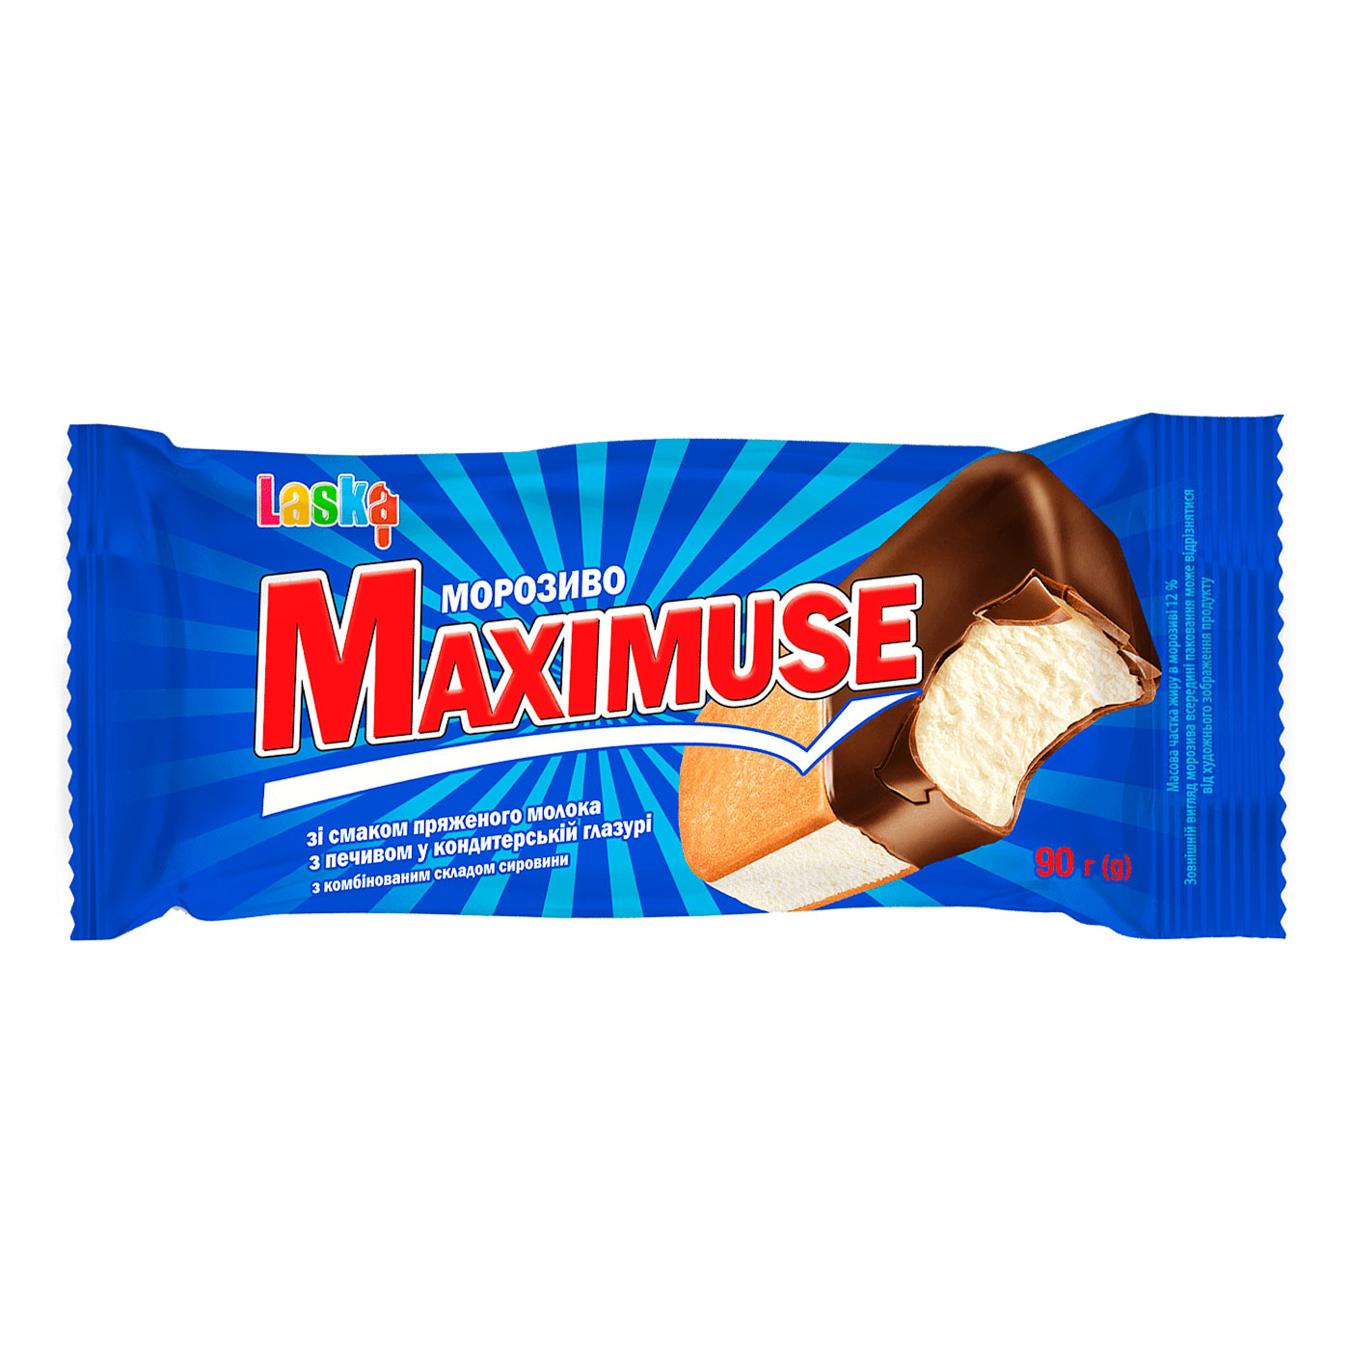 Морозиво Maxime смак пряжене молоко-печиво у кондитерській глазурі 90г